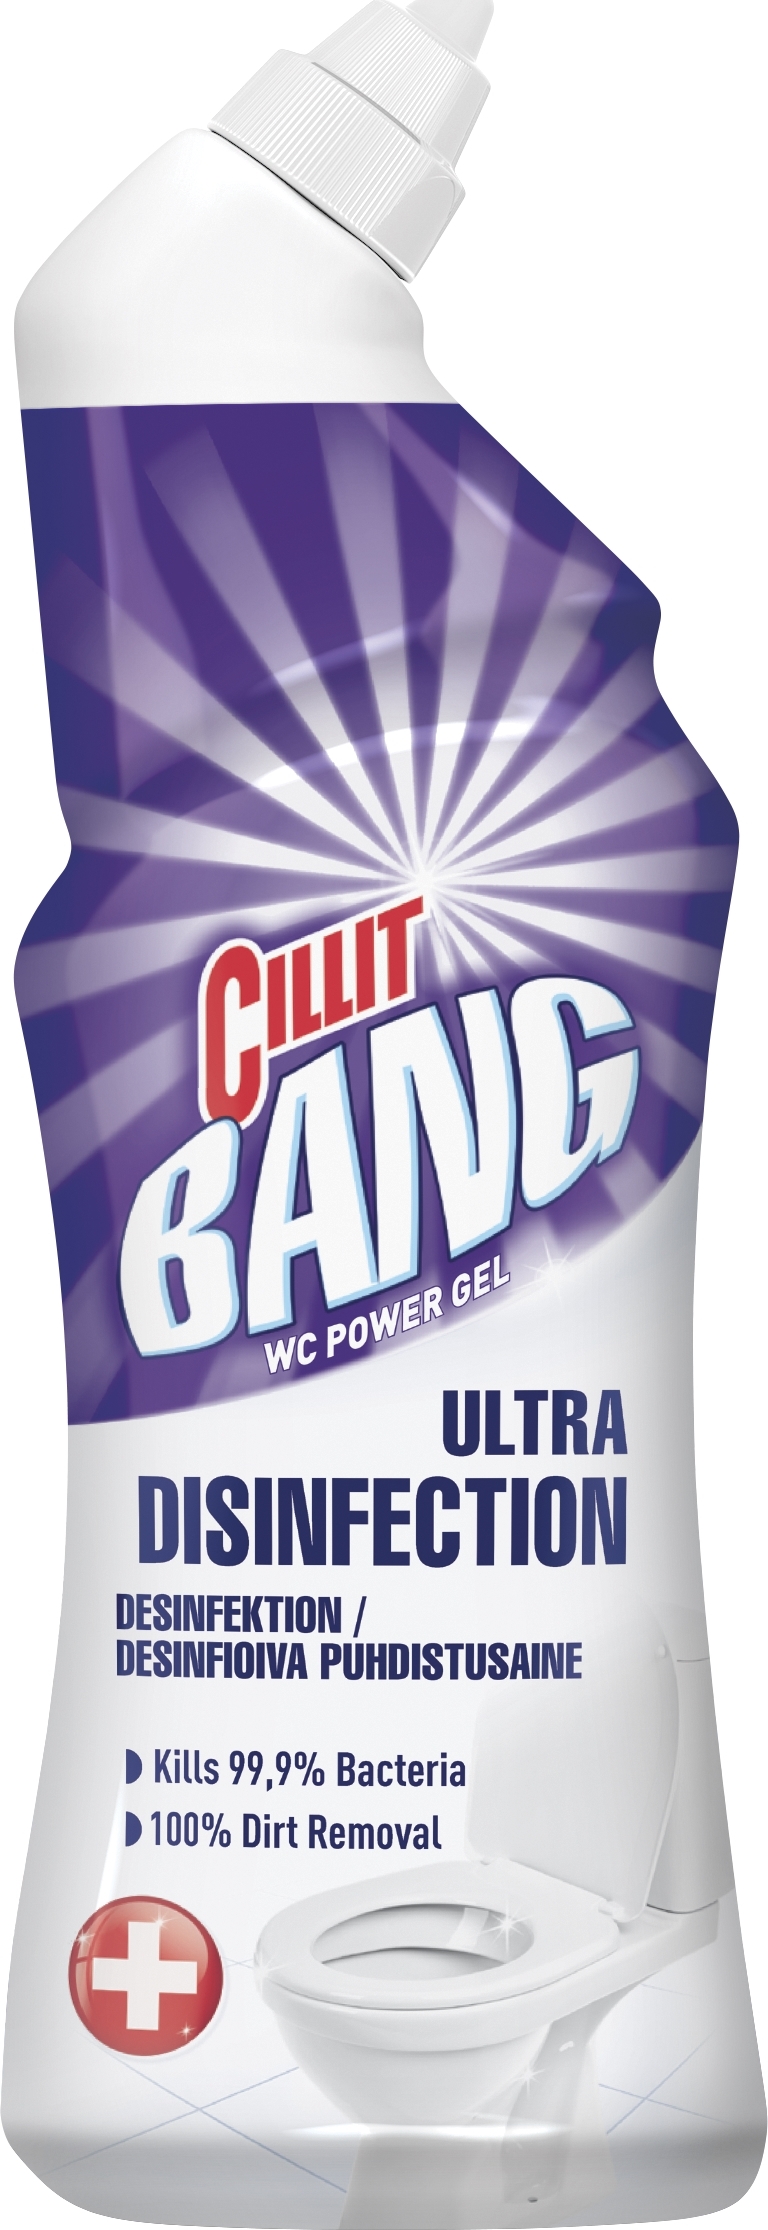 Cillit Bang WC Power Gel, 750 ml